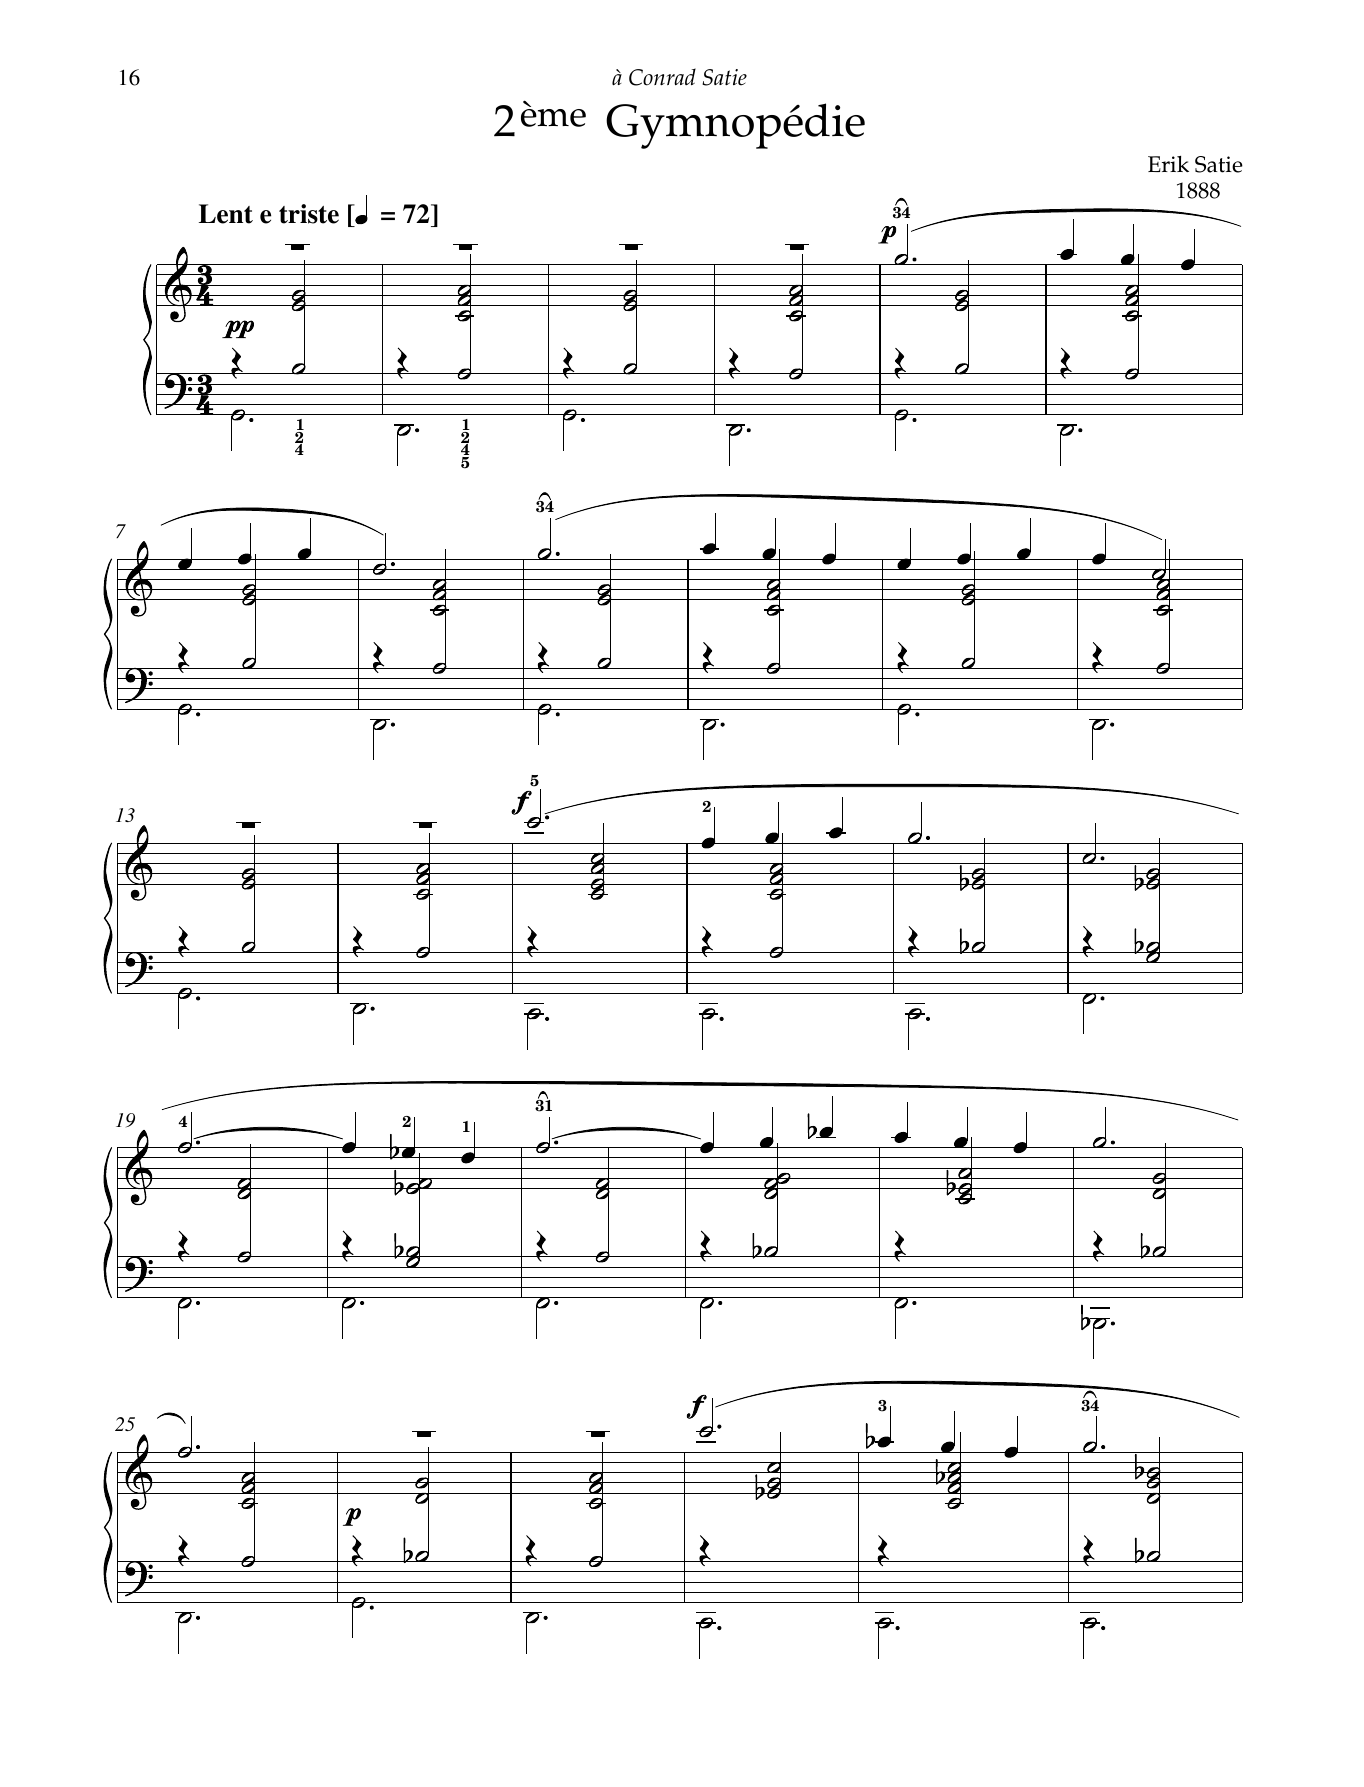 Download Erik Satie 2eme Gymnopedie Sheet Music